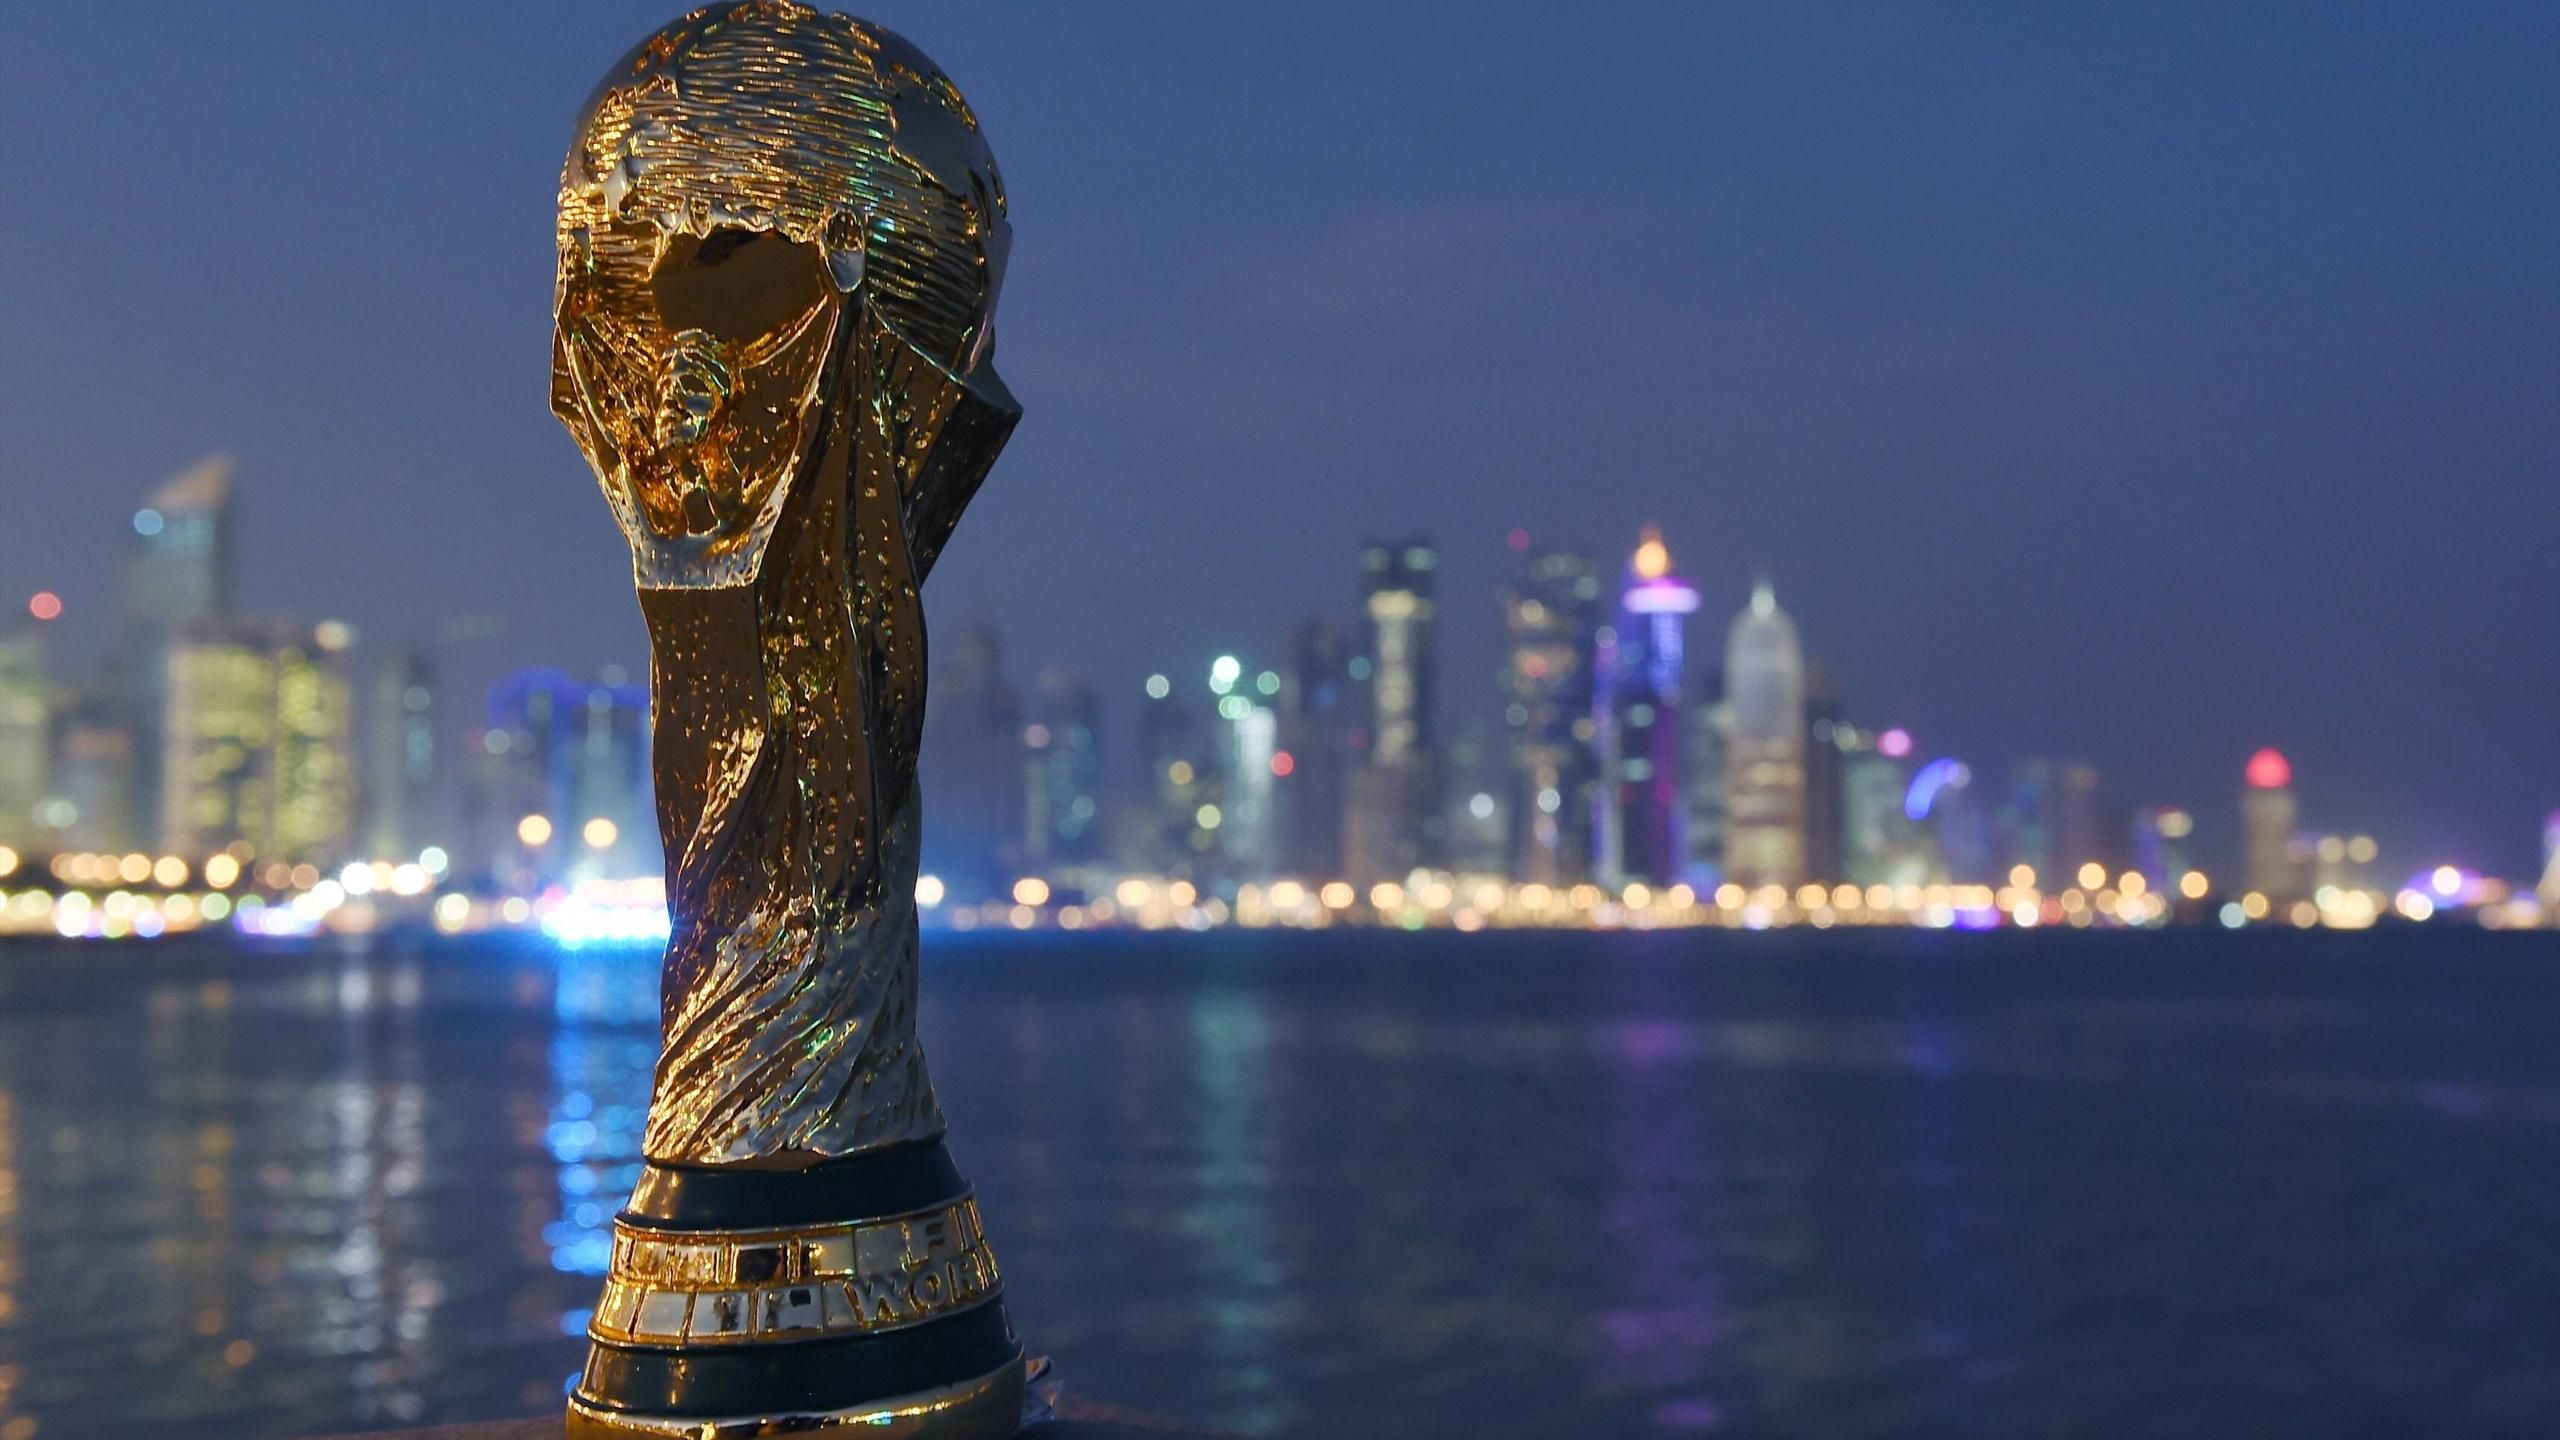 Le 21 novembre 2021, une cérémonie a eu lieu dans le pays hôte pour fêter l’entrée dans la dernière année des préparatifs pour la coupe du monde de la fifa, qatar 2022. Coupe du monde Qatar 2022 : La FIFA propose un calendrier dense - Le